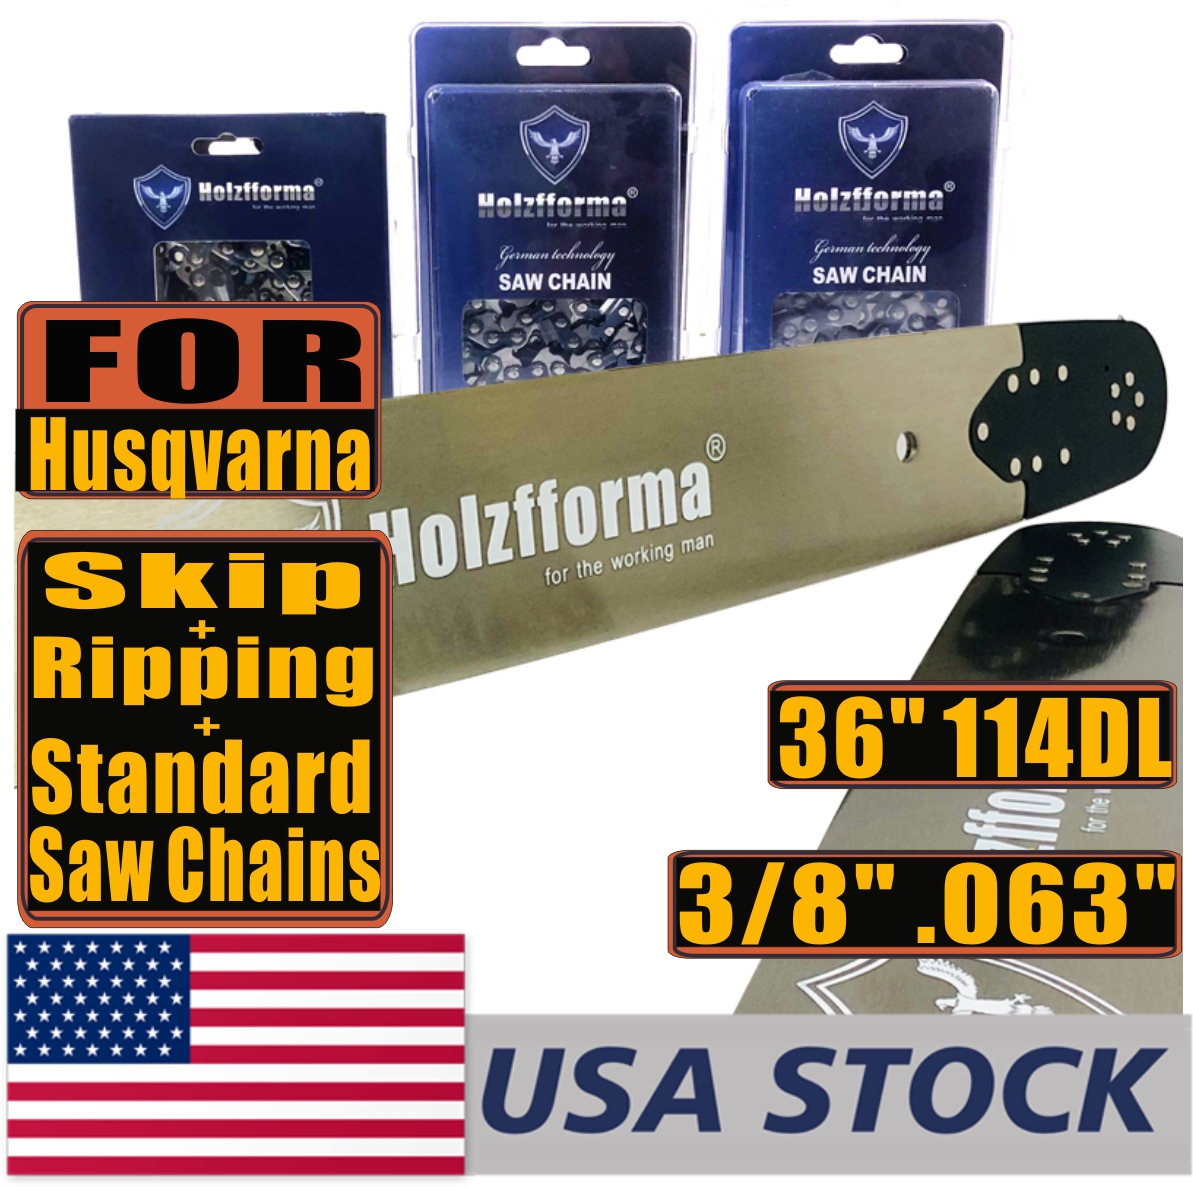 Holzfforma® Chainsaw Ripping Chain Semi Chisel 3/8''.063'' 28inch 92DL